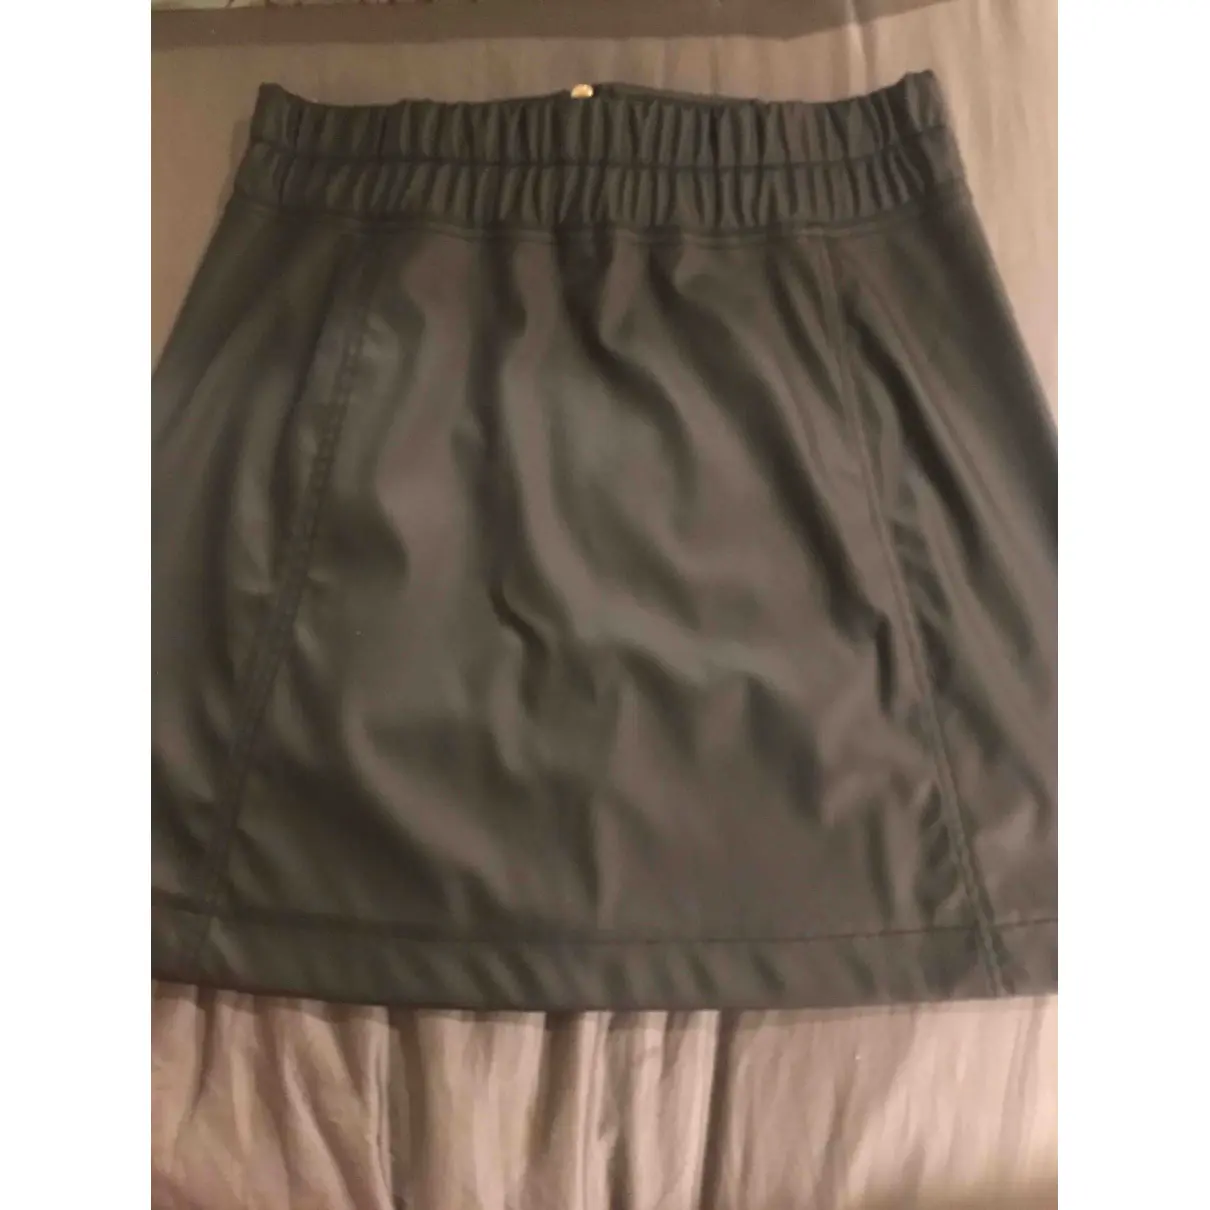 Buy Paco Rabanne Mini skirt online